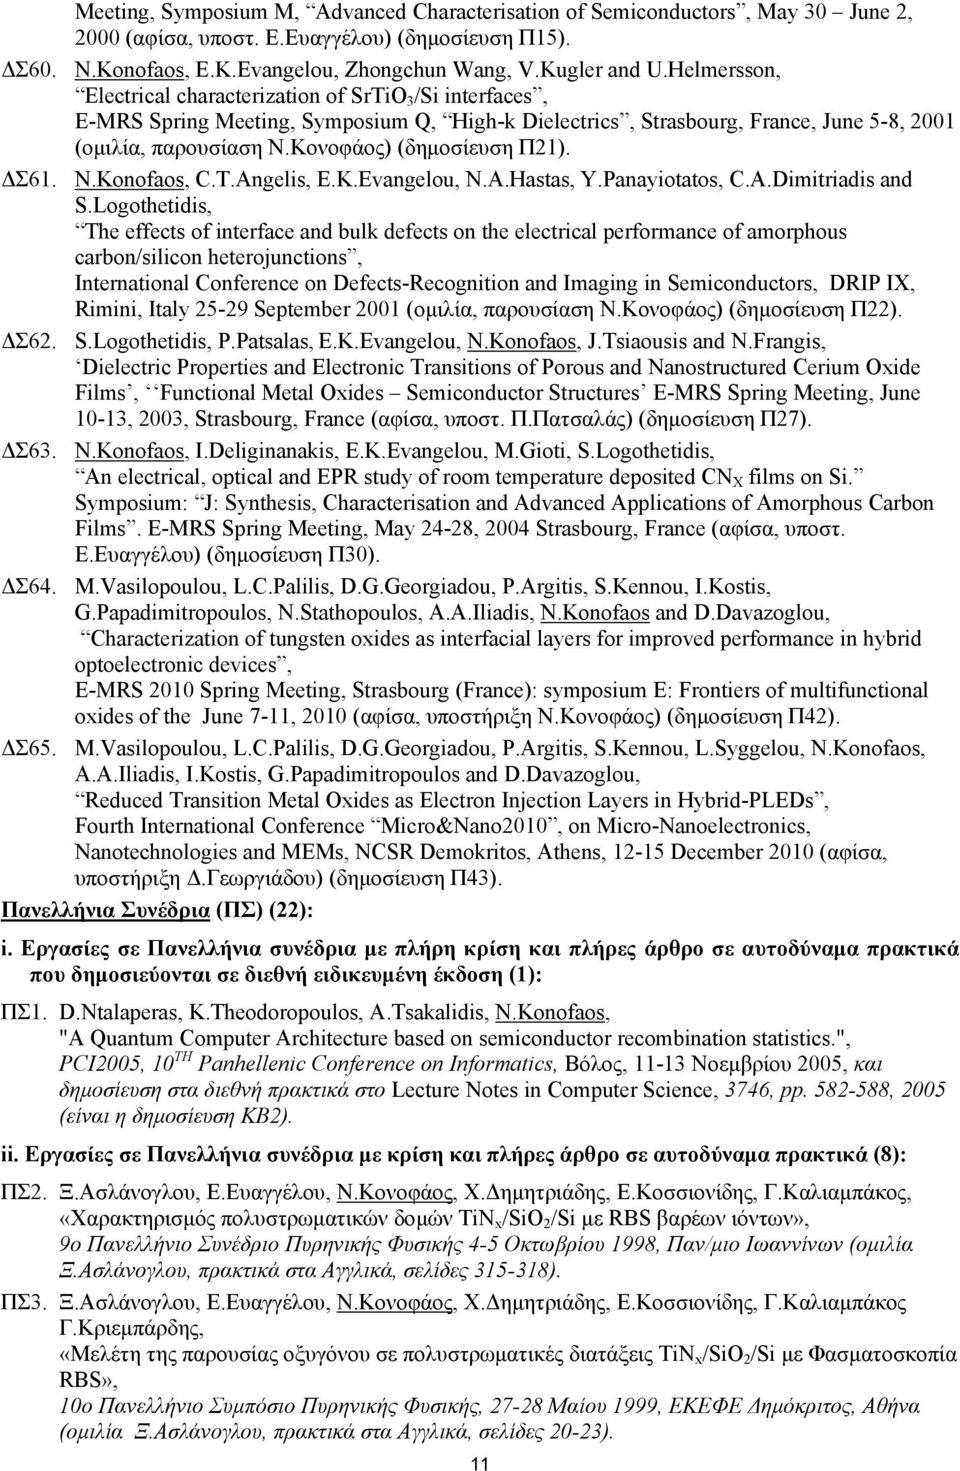 Κονοφάος) (δημοσίευση Π21). ΔΣ61. N.Konofaos, C.T.Angelis, E.K.Evangelou, N.A.Hastas, Y.Panayiotatos, C.A.Dimitriadis and S.